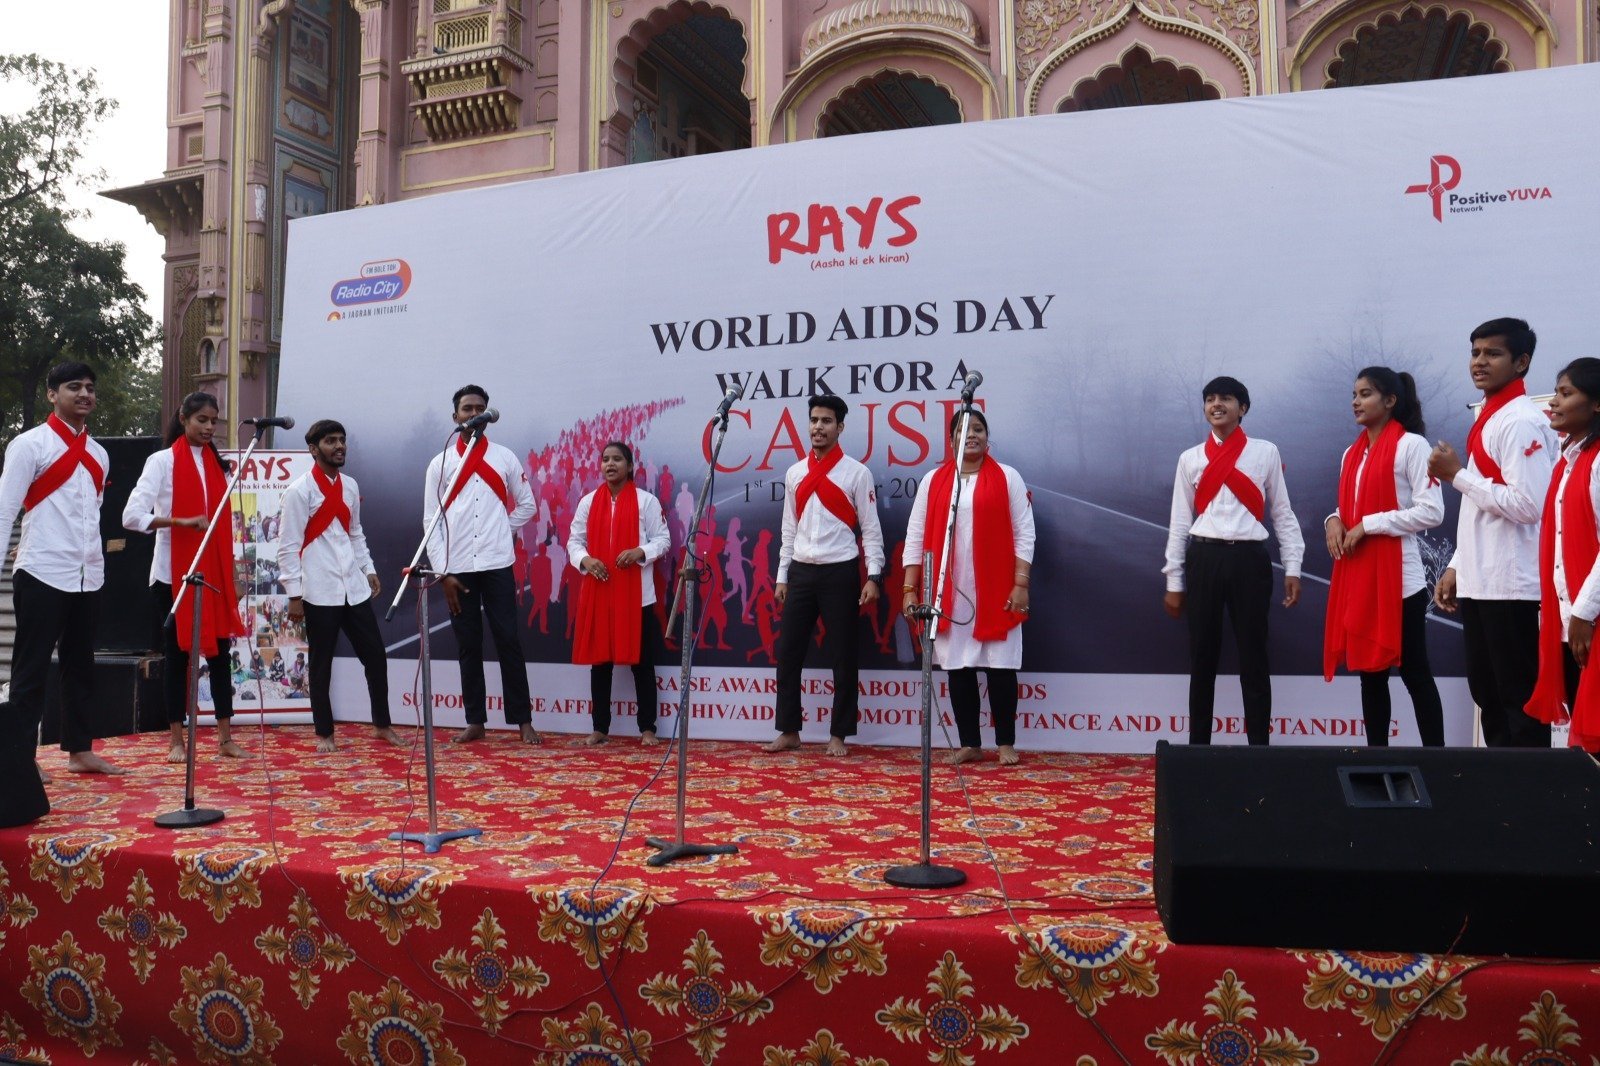 Rays Aasha Ki Ek Kiran Leads Empowering Walkathon in Jaipur on World AIDS Day